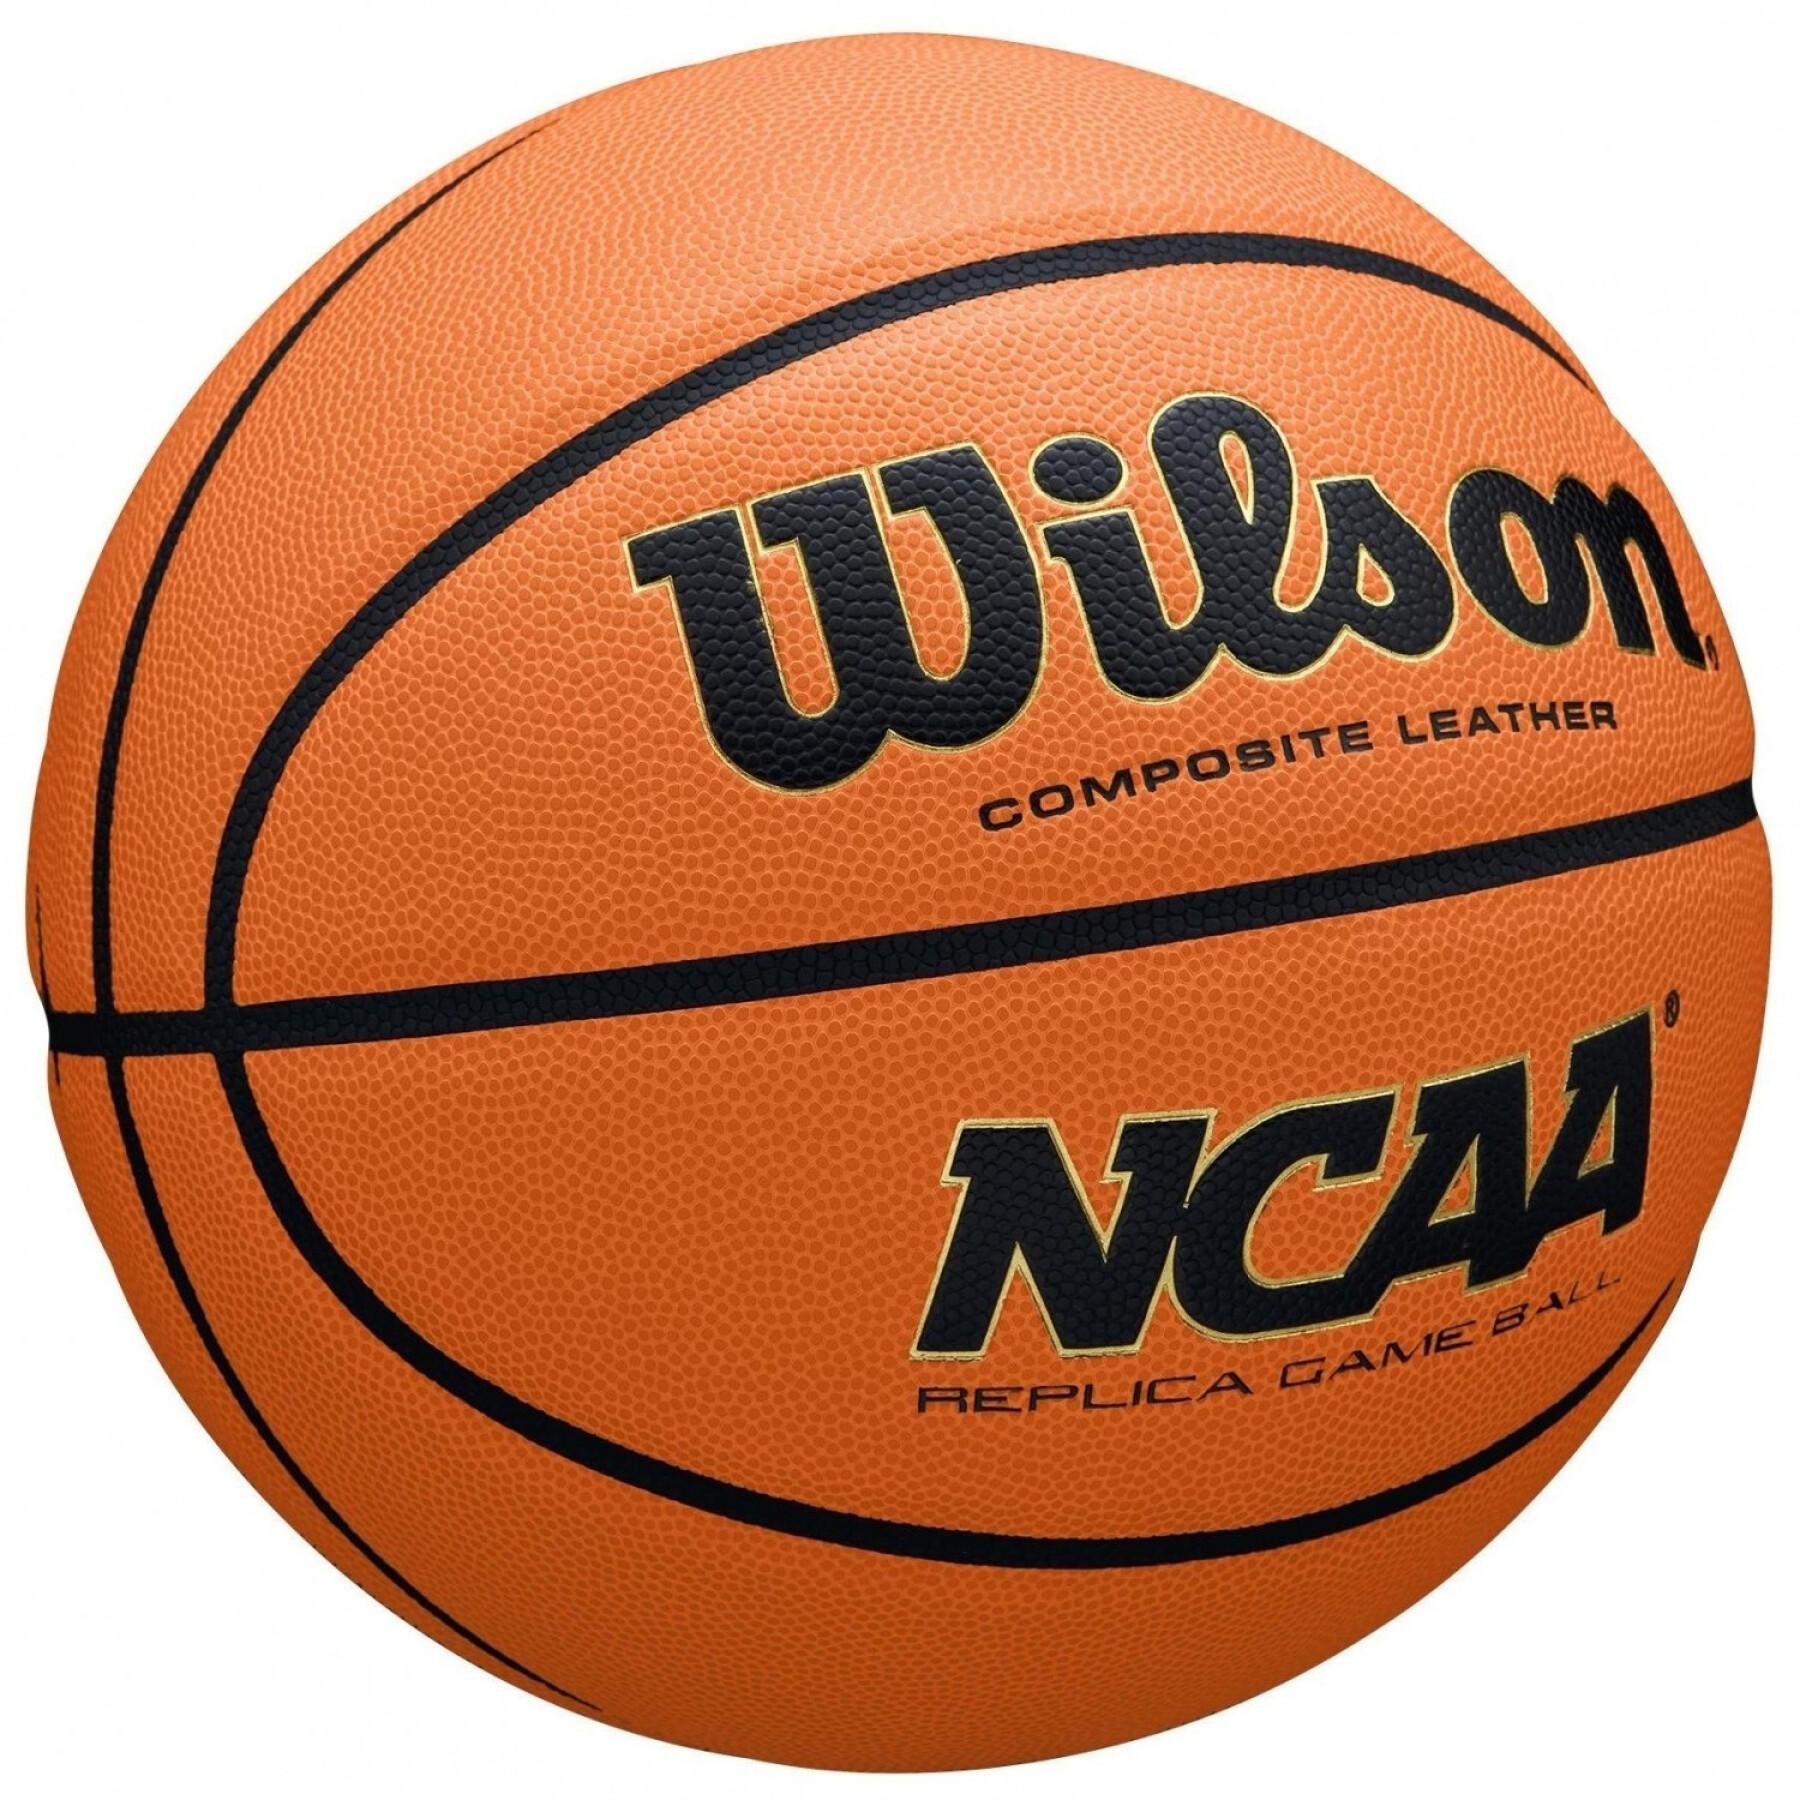 Ballong NCAA Evo Nxt Replica